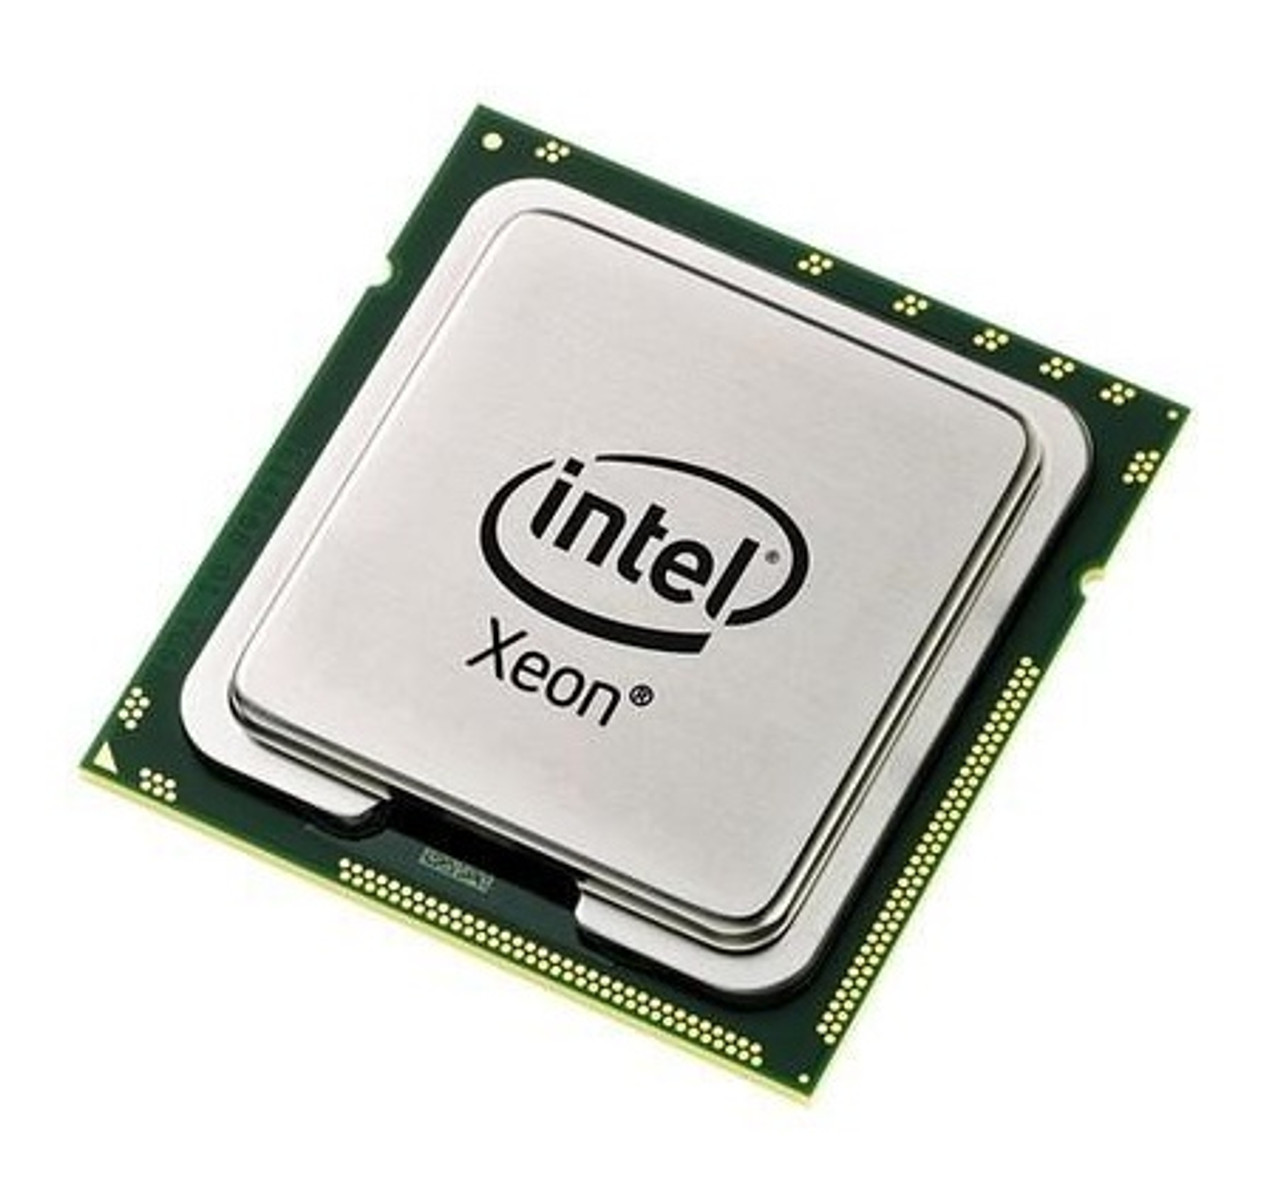 A01-X0109= - Cisco 2.66GHz 5.86GT/s QPI 12MB L3 Cache Intel Xeon E5640 Quad Core Processor